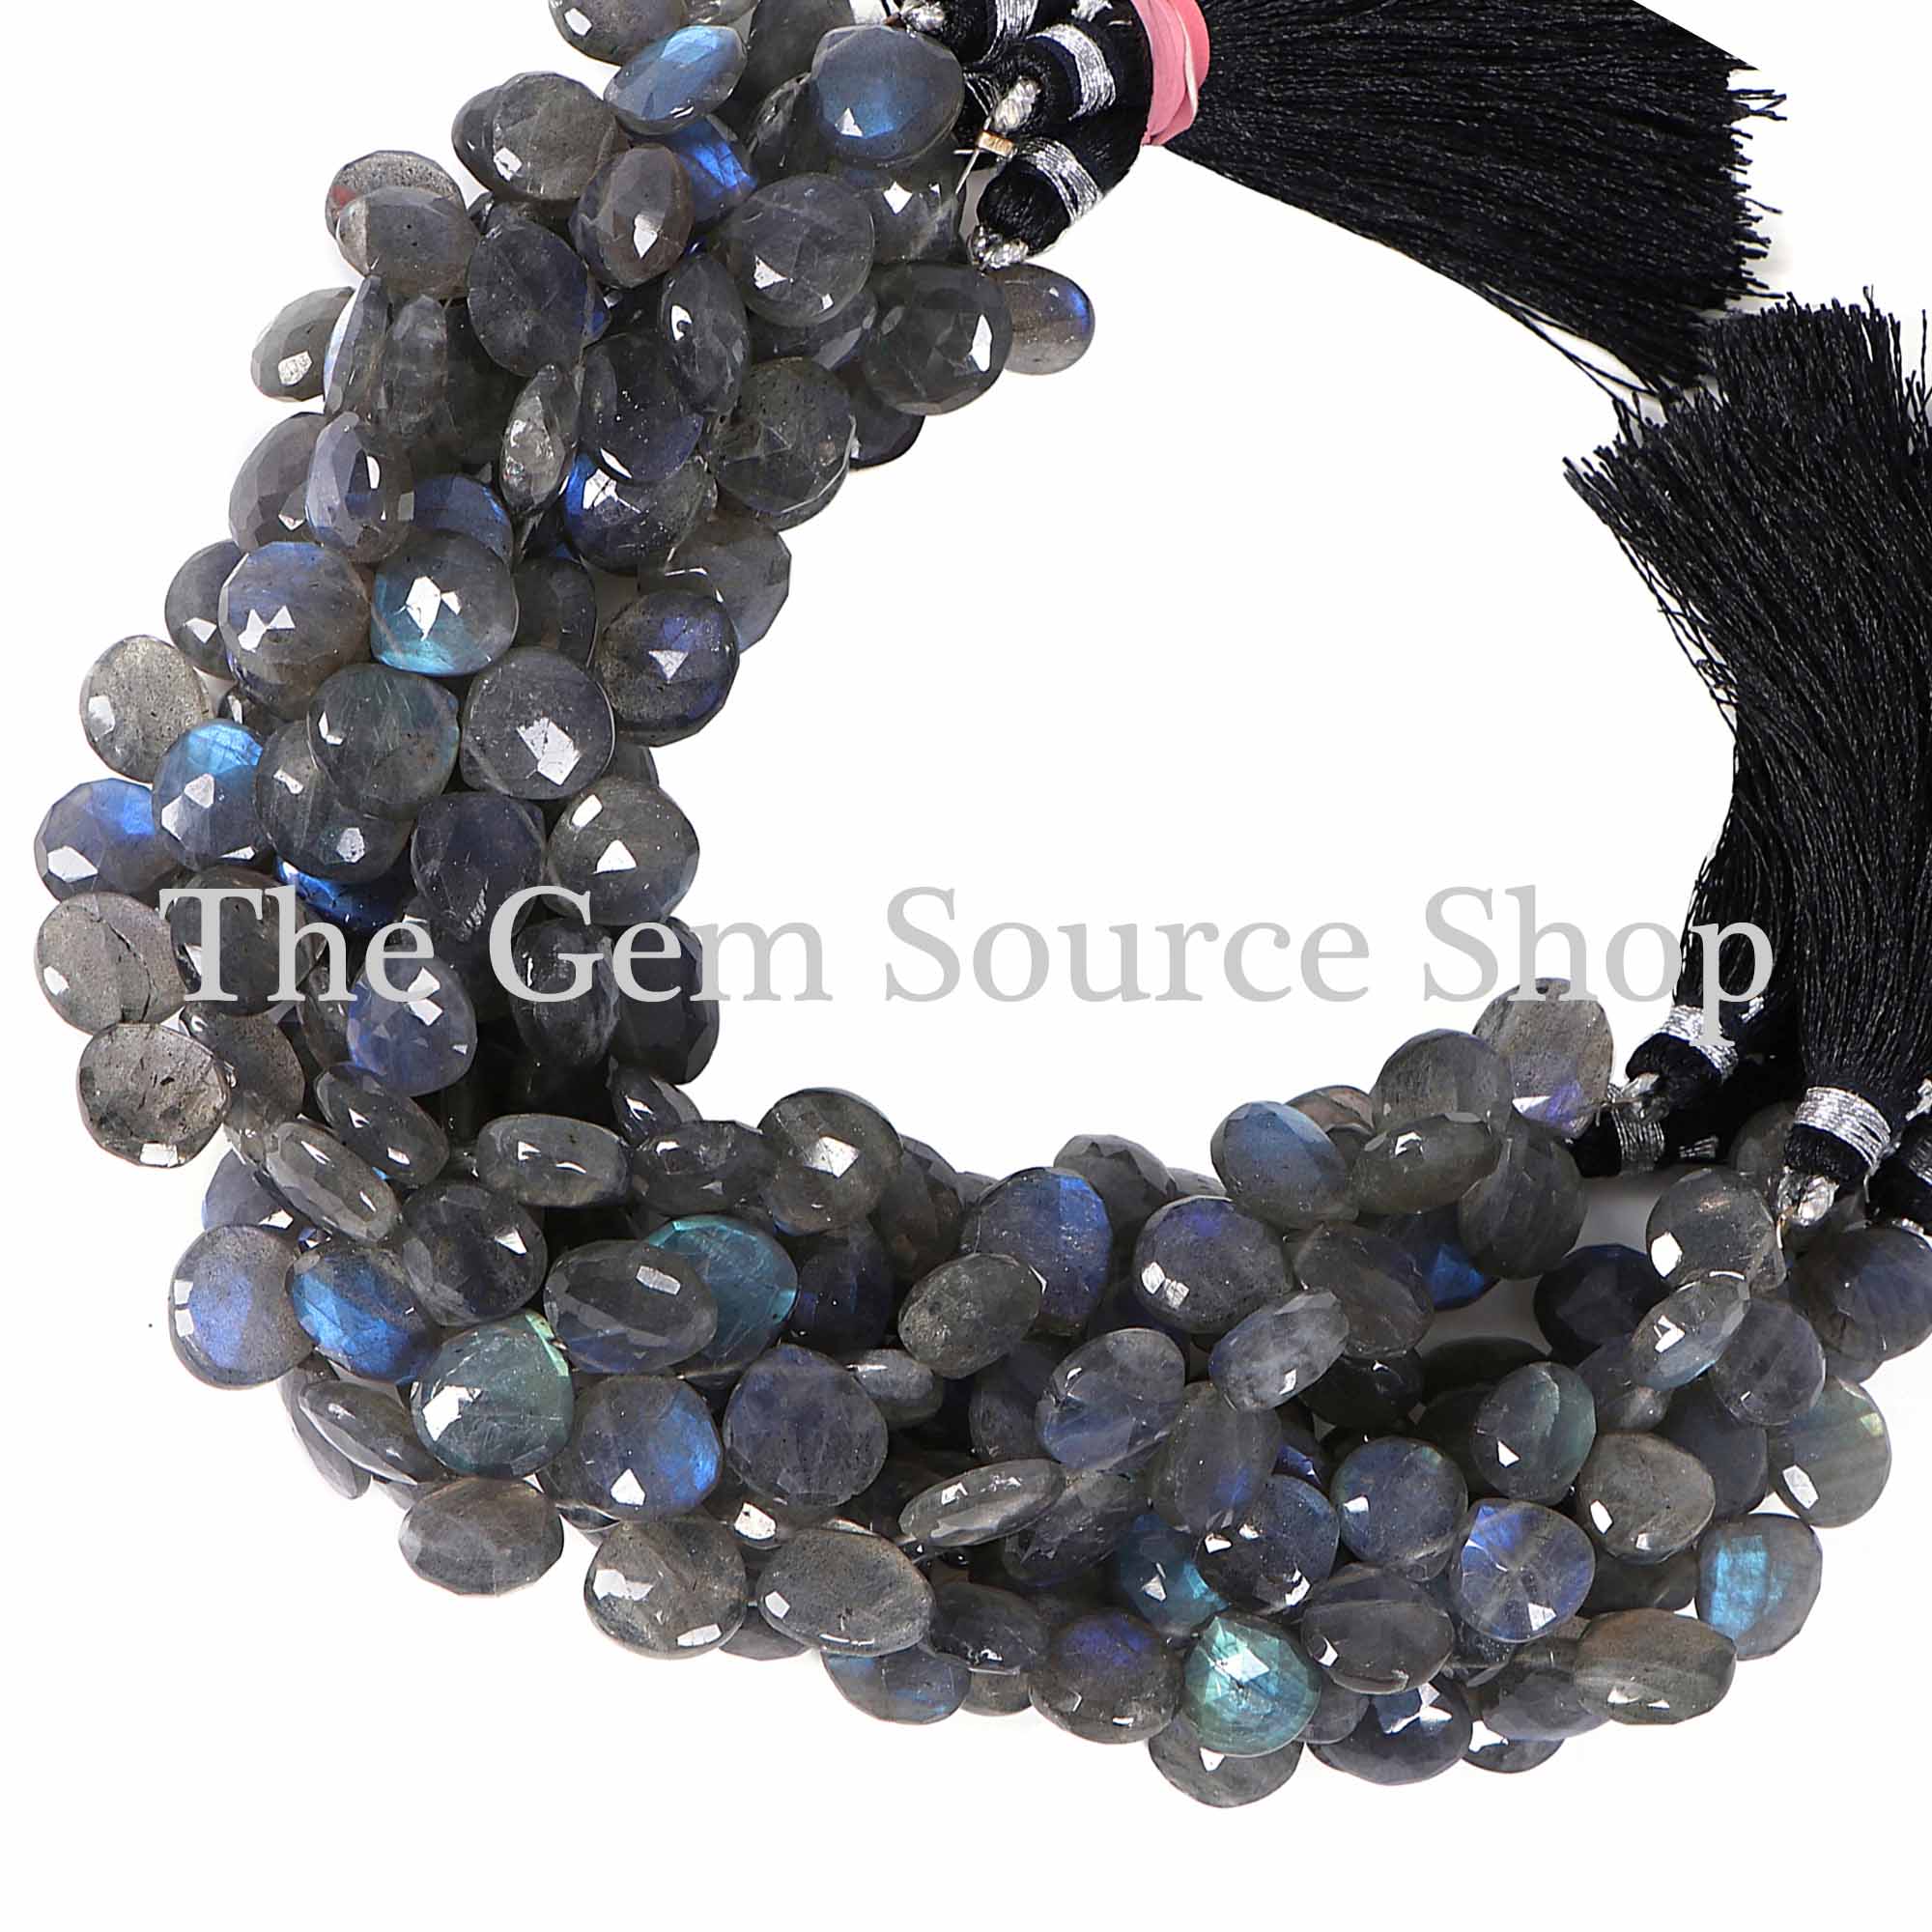 Naural Labradorite Beads, Labradorite Faceted Beads, Labradorite Heart Shape Beads, Wholesale Beads